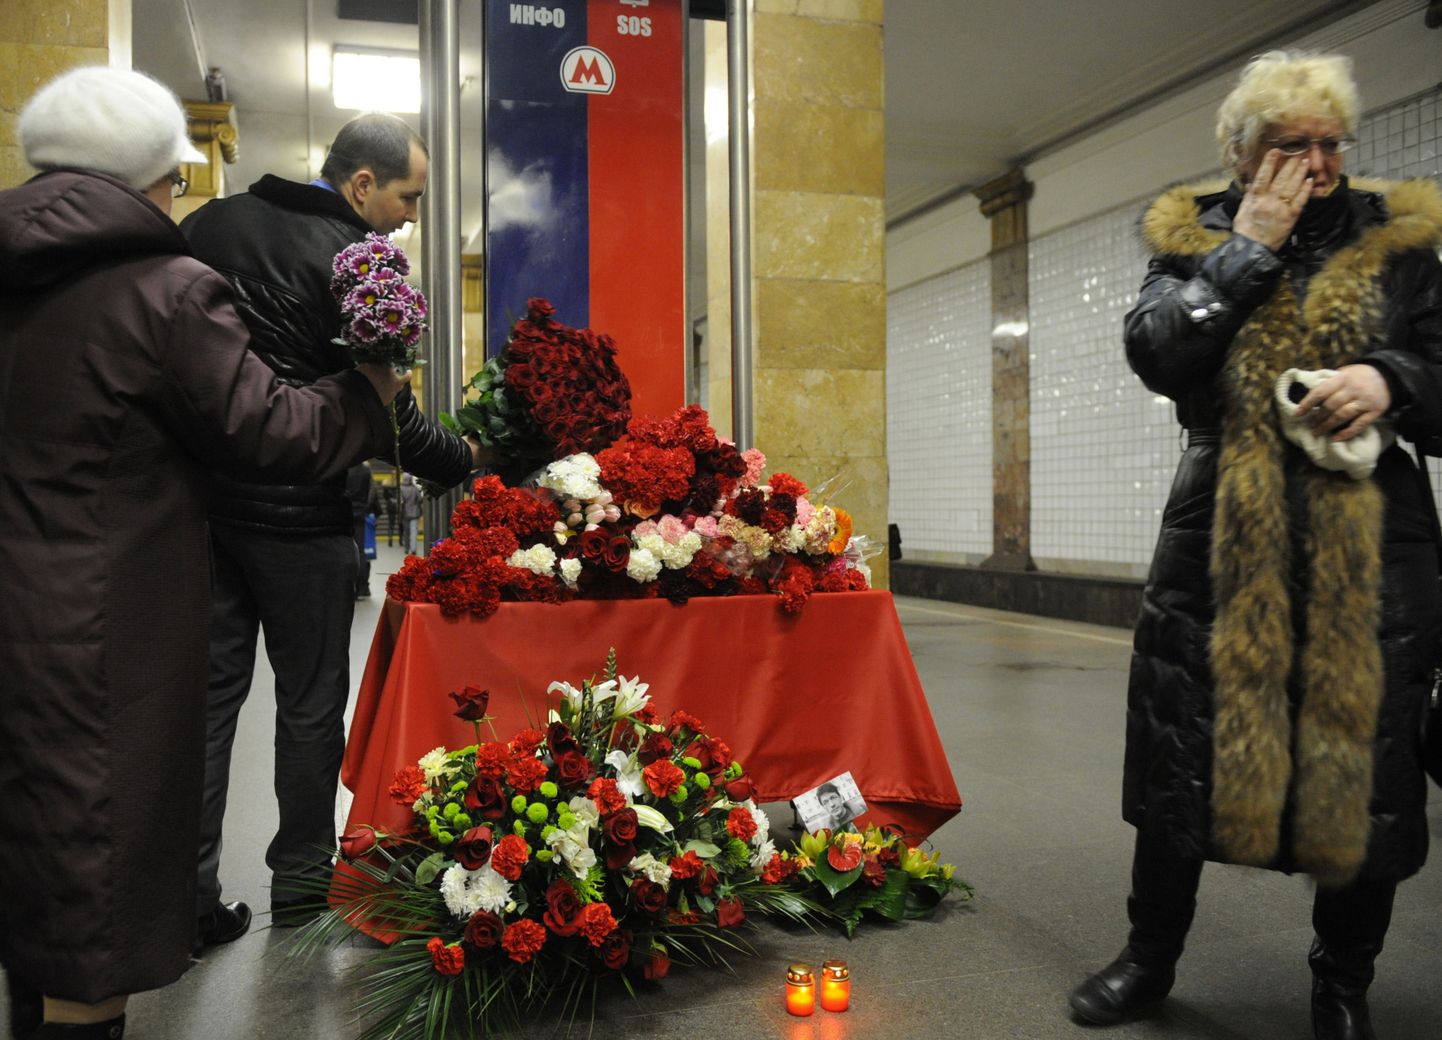 Inimesed panid Park Kulturõ jaama terroriakti ohvrite mäletuseks lilli. Foto on tehtud 29. märtsil 2010.